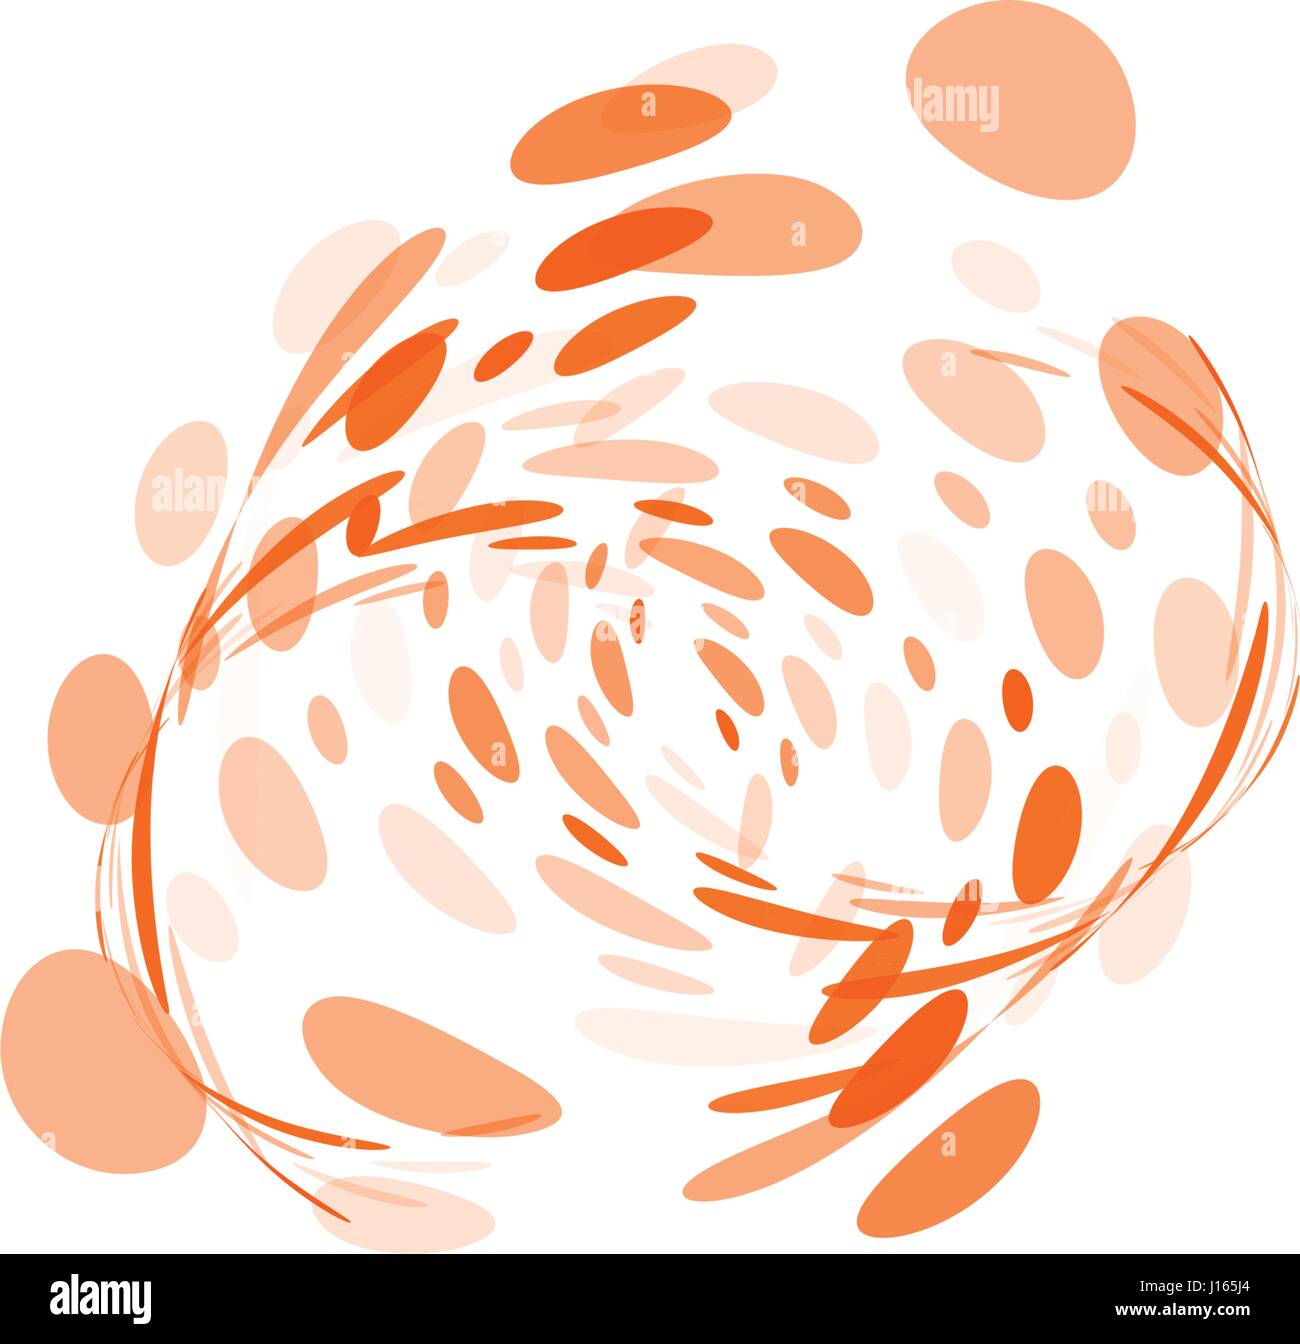 Isolierte abstrakt bunt ungewöhnliche Form Logo Blasen, gepunktete Schriftzug auf schwarzem Hintergrund-Vektor-illustration Stock Vektor